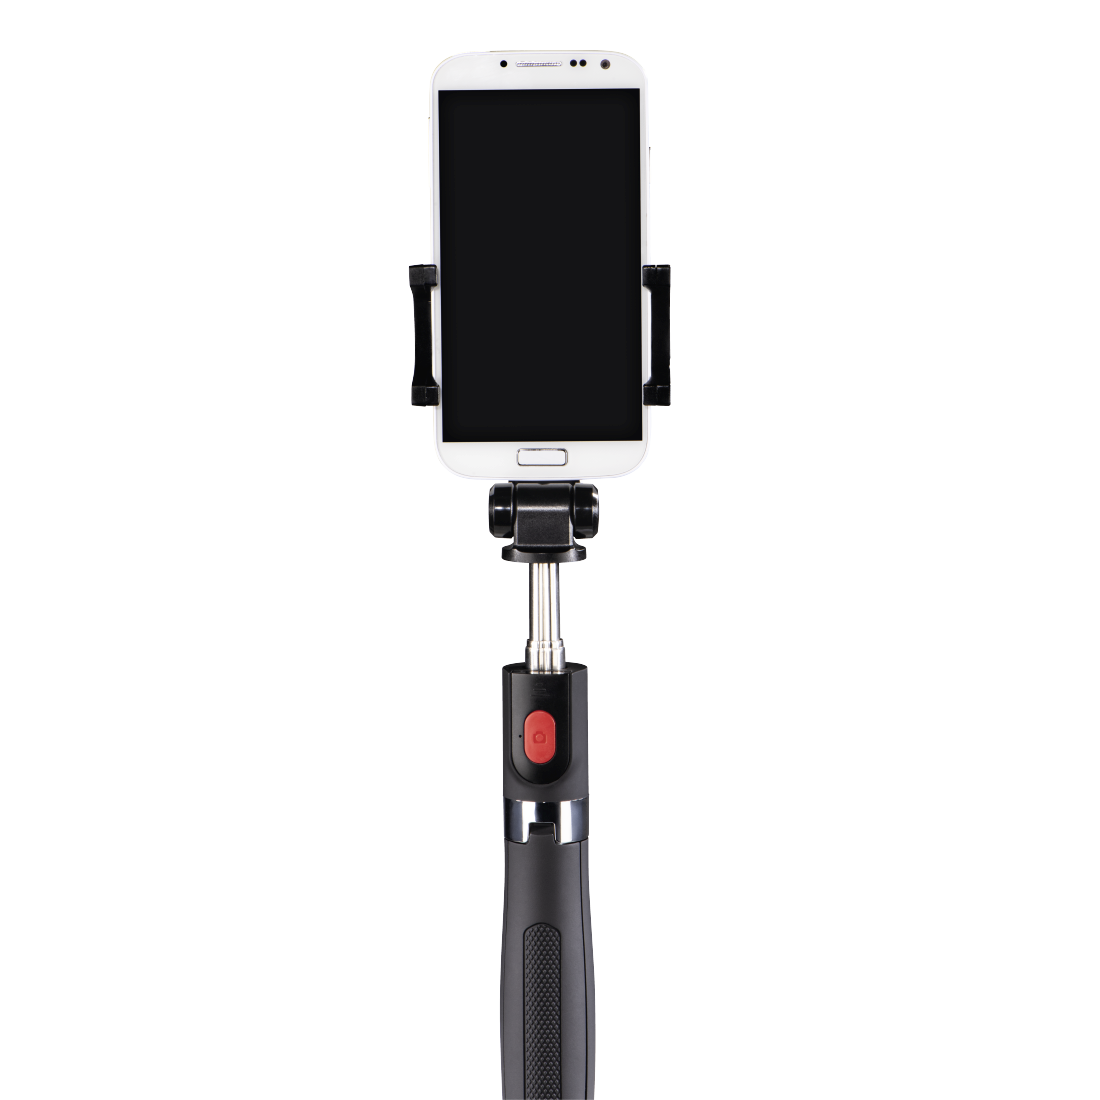 schwarz Hama Selfie Stick für Handys z. B. iPhone 6/6s, Samsung Galaxy S6/S6 edge, mit Auslöser und 3,5-mm-Anschlusskabel, Miniformat 